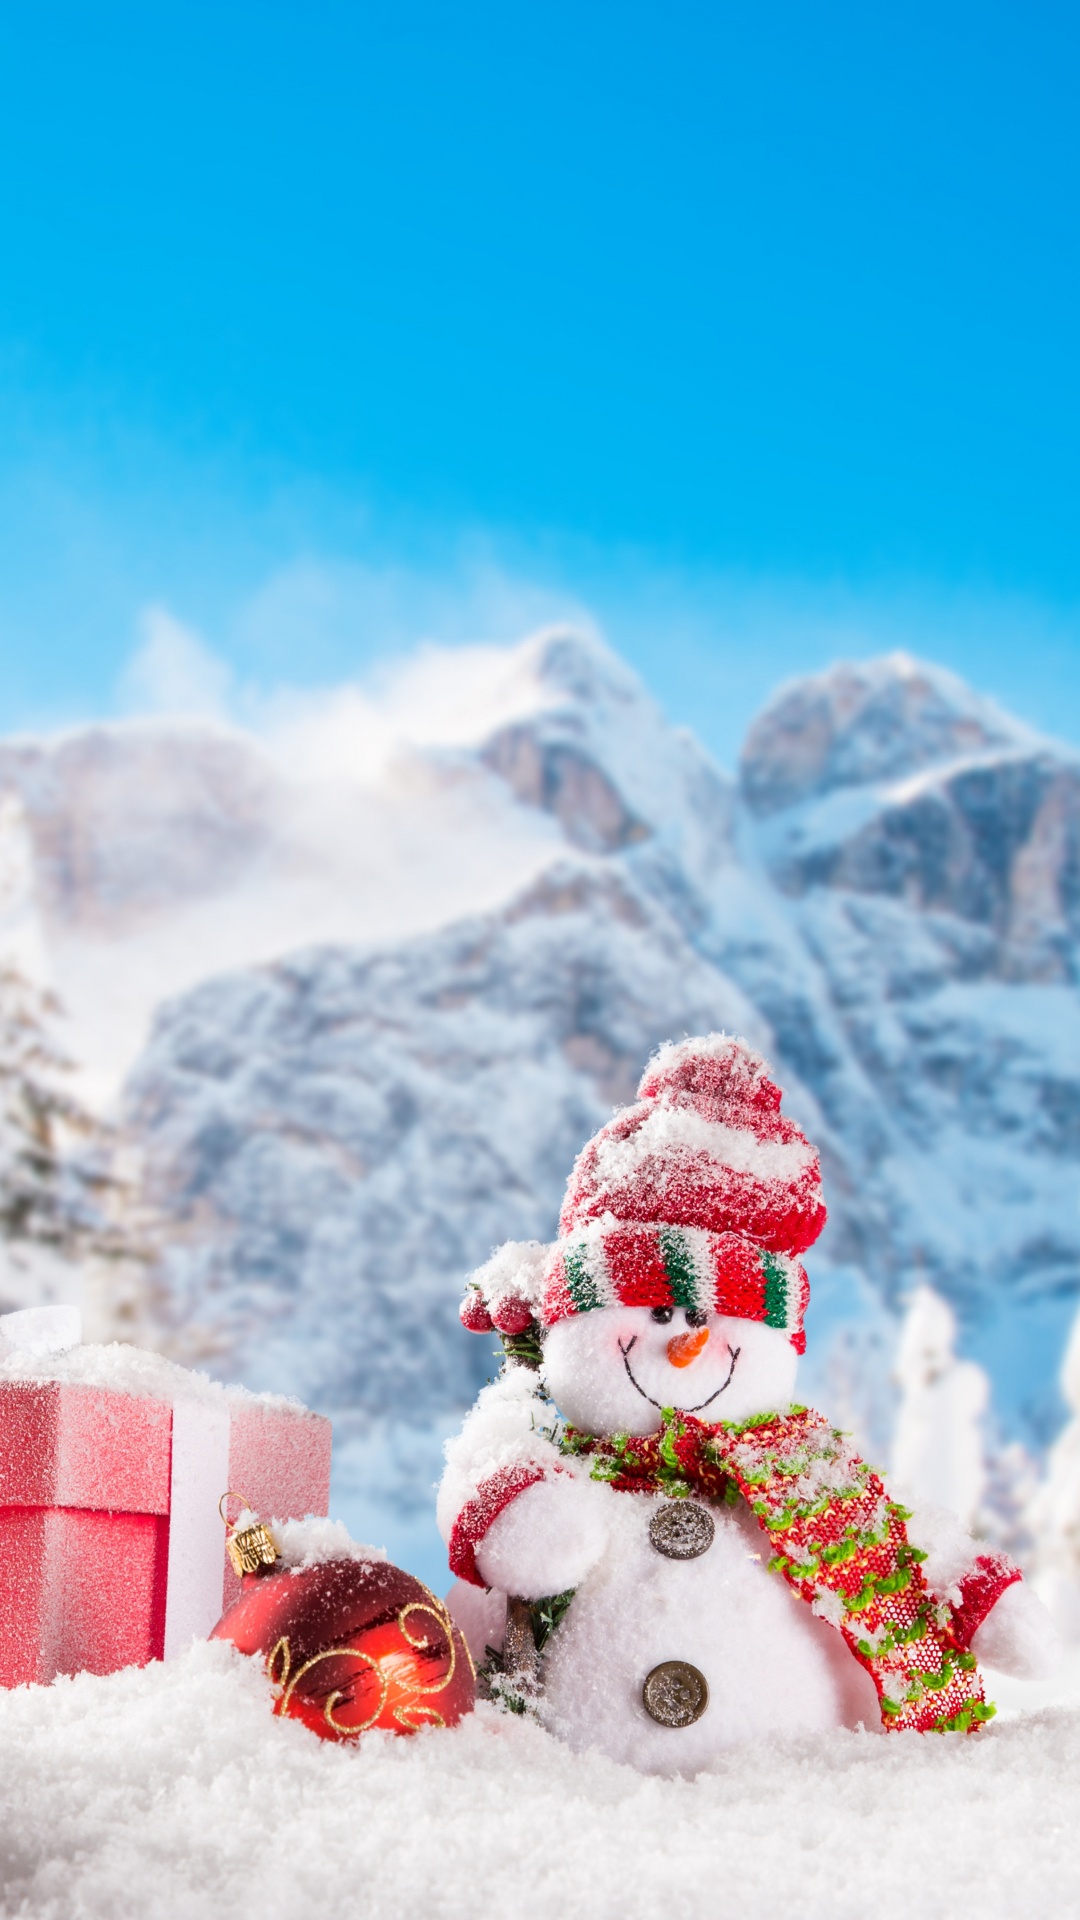 圣诞节那天, 雪人, 冬天, 冻结, 圣诞节 壁纸 1080x1920 允许